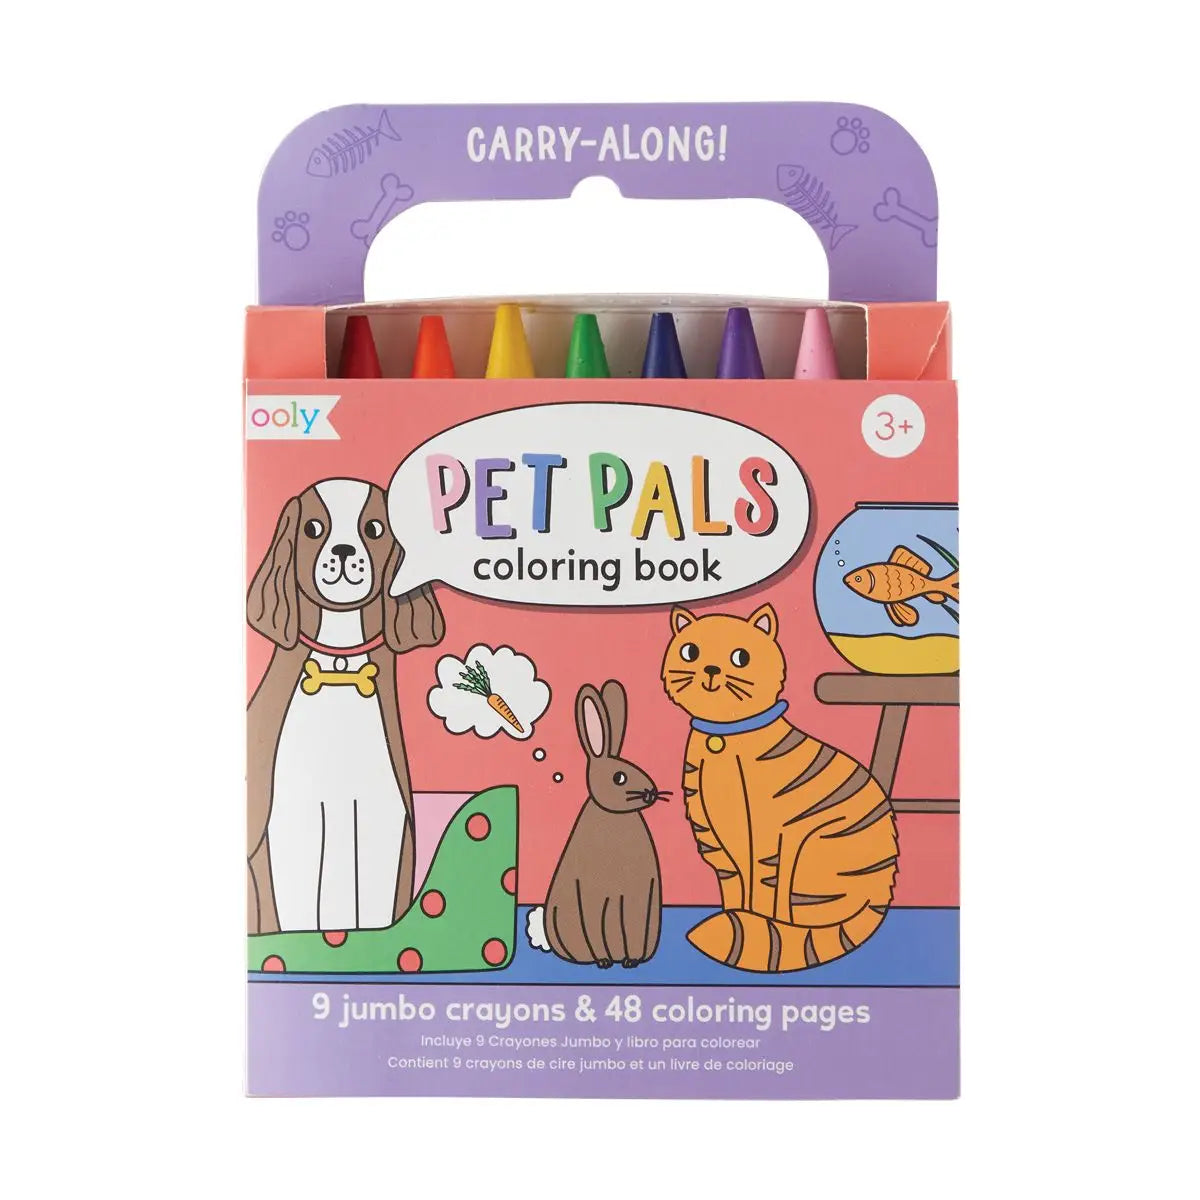 Carry Along Crayon & Coloring Book Kit - Pet Pals